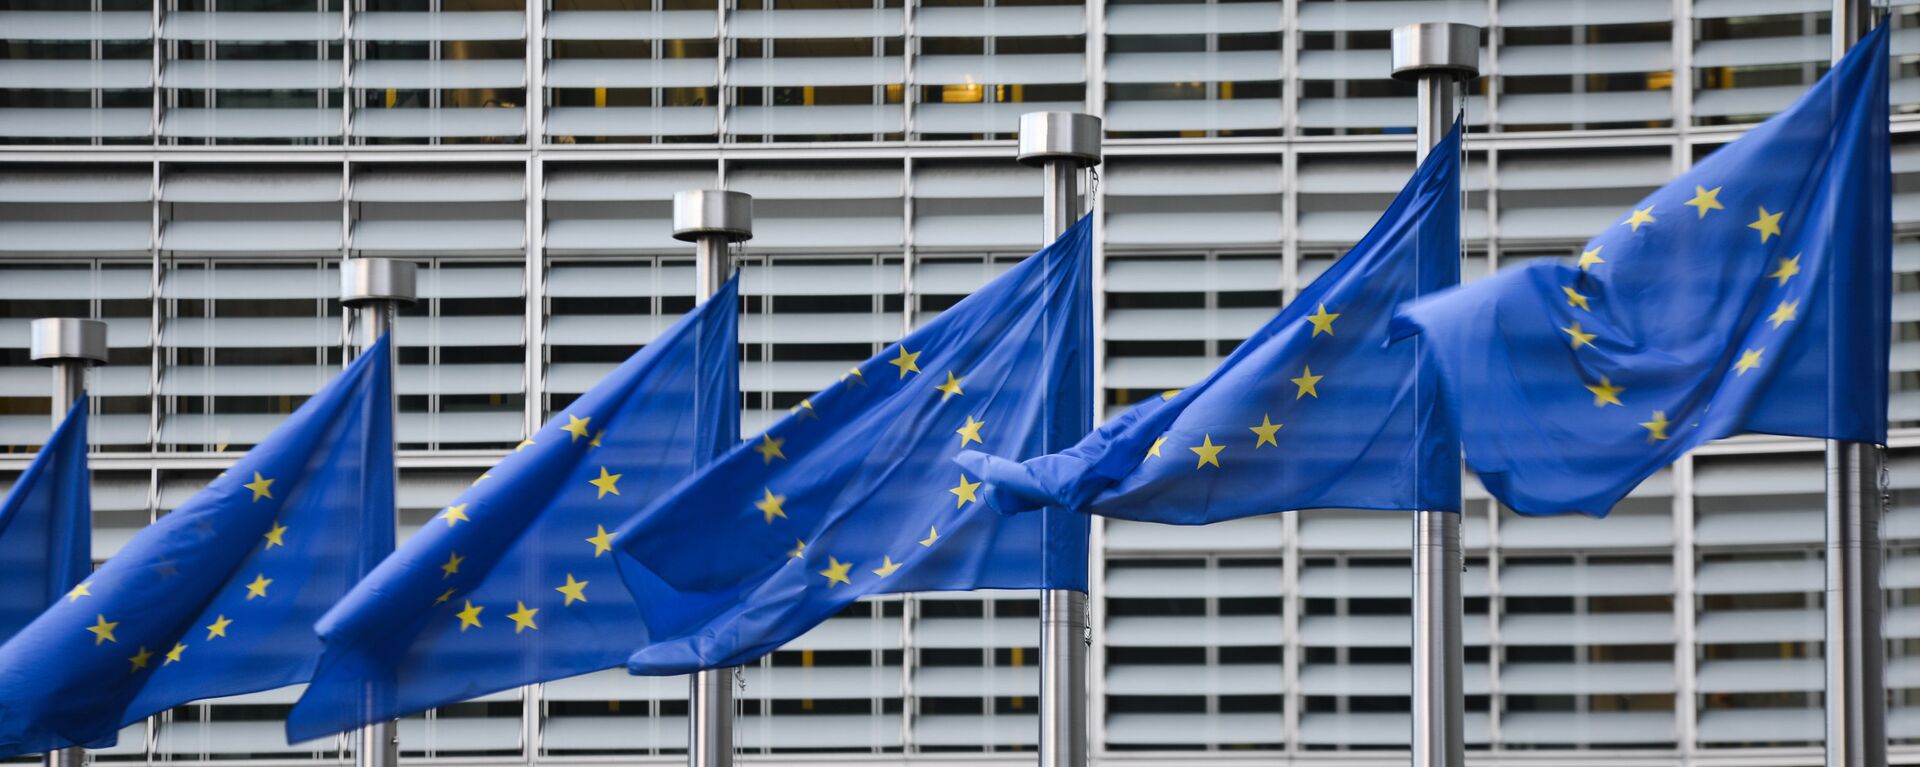 Флаги Евросоюза у здания штаб-квартиры Европейской комиссии в Брюсселе - Sputnik Latvija, 1920, 25.10.2021